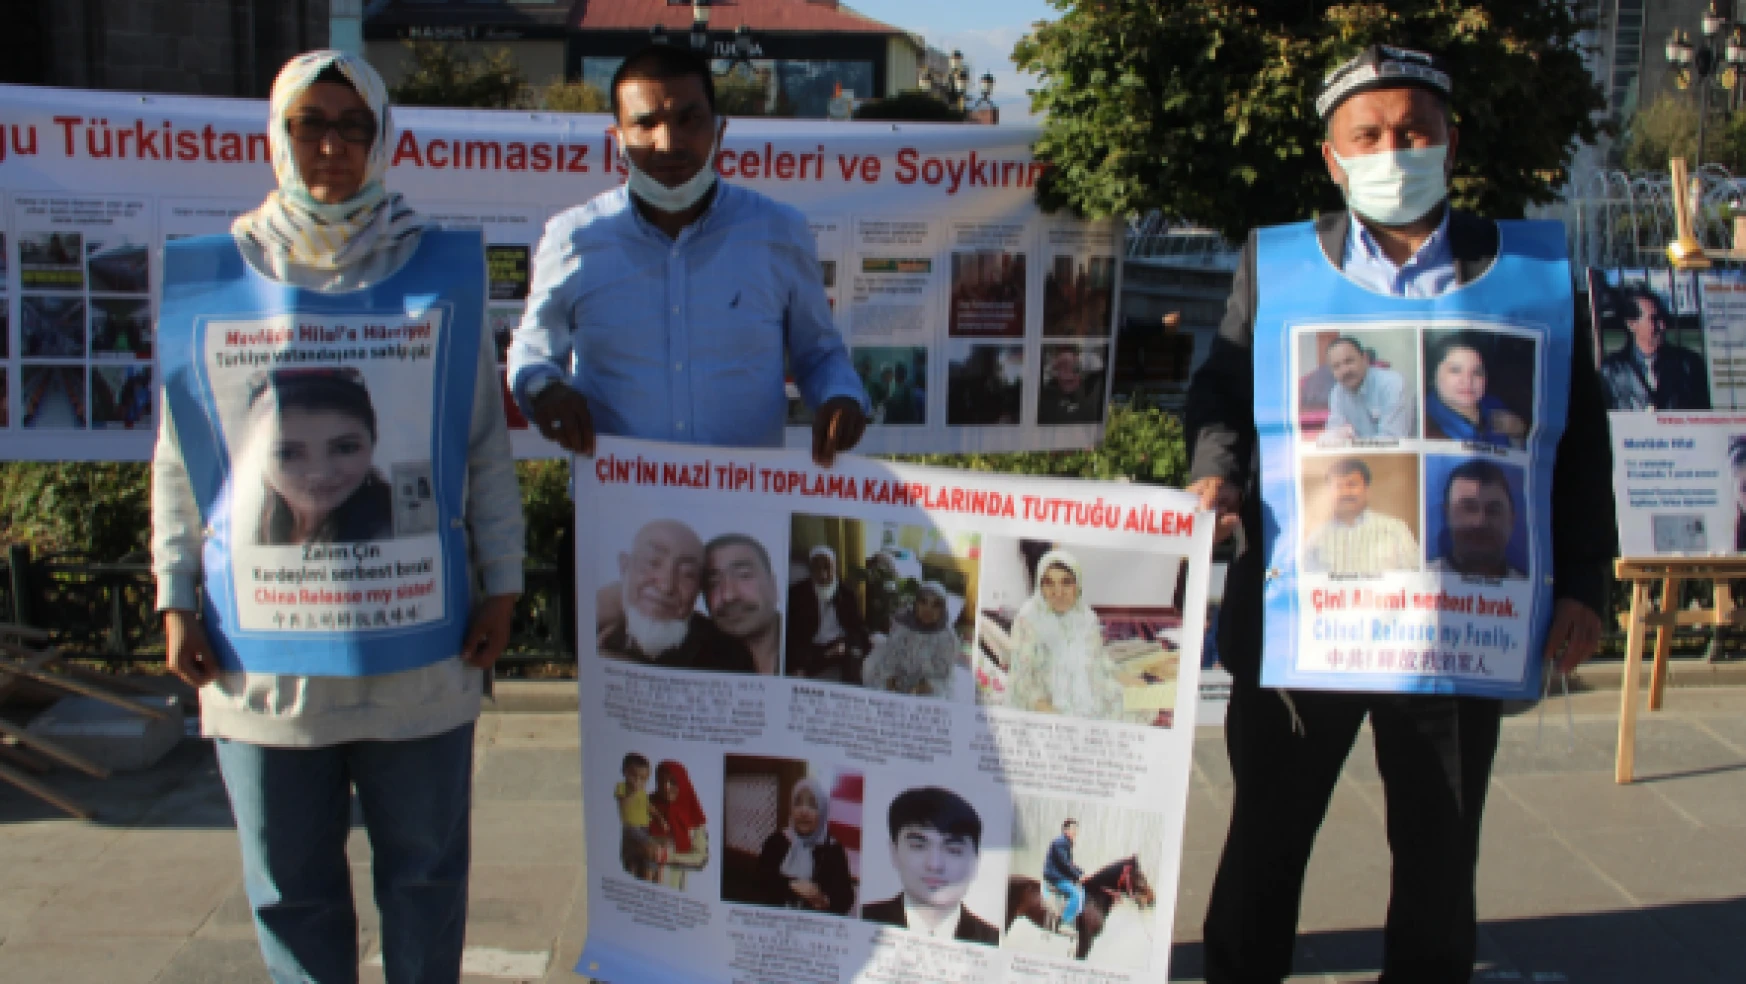 Doğu Türkistanlı Toplama Kampı mağdurları yeniden Anadolu seferine çıktı